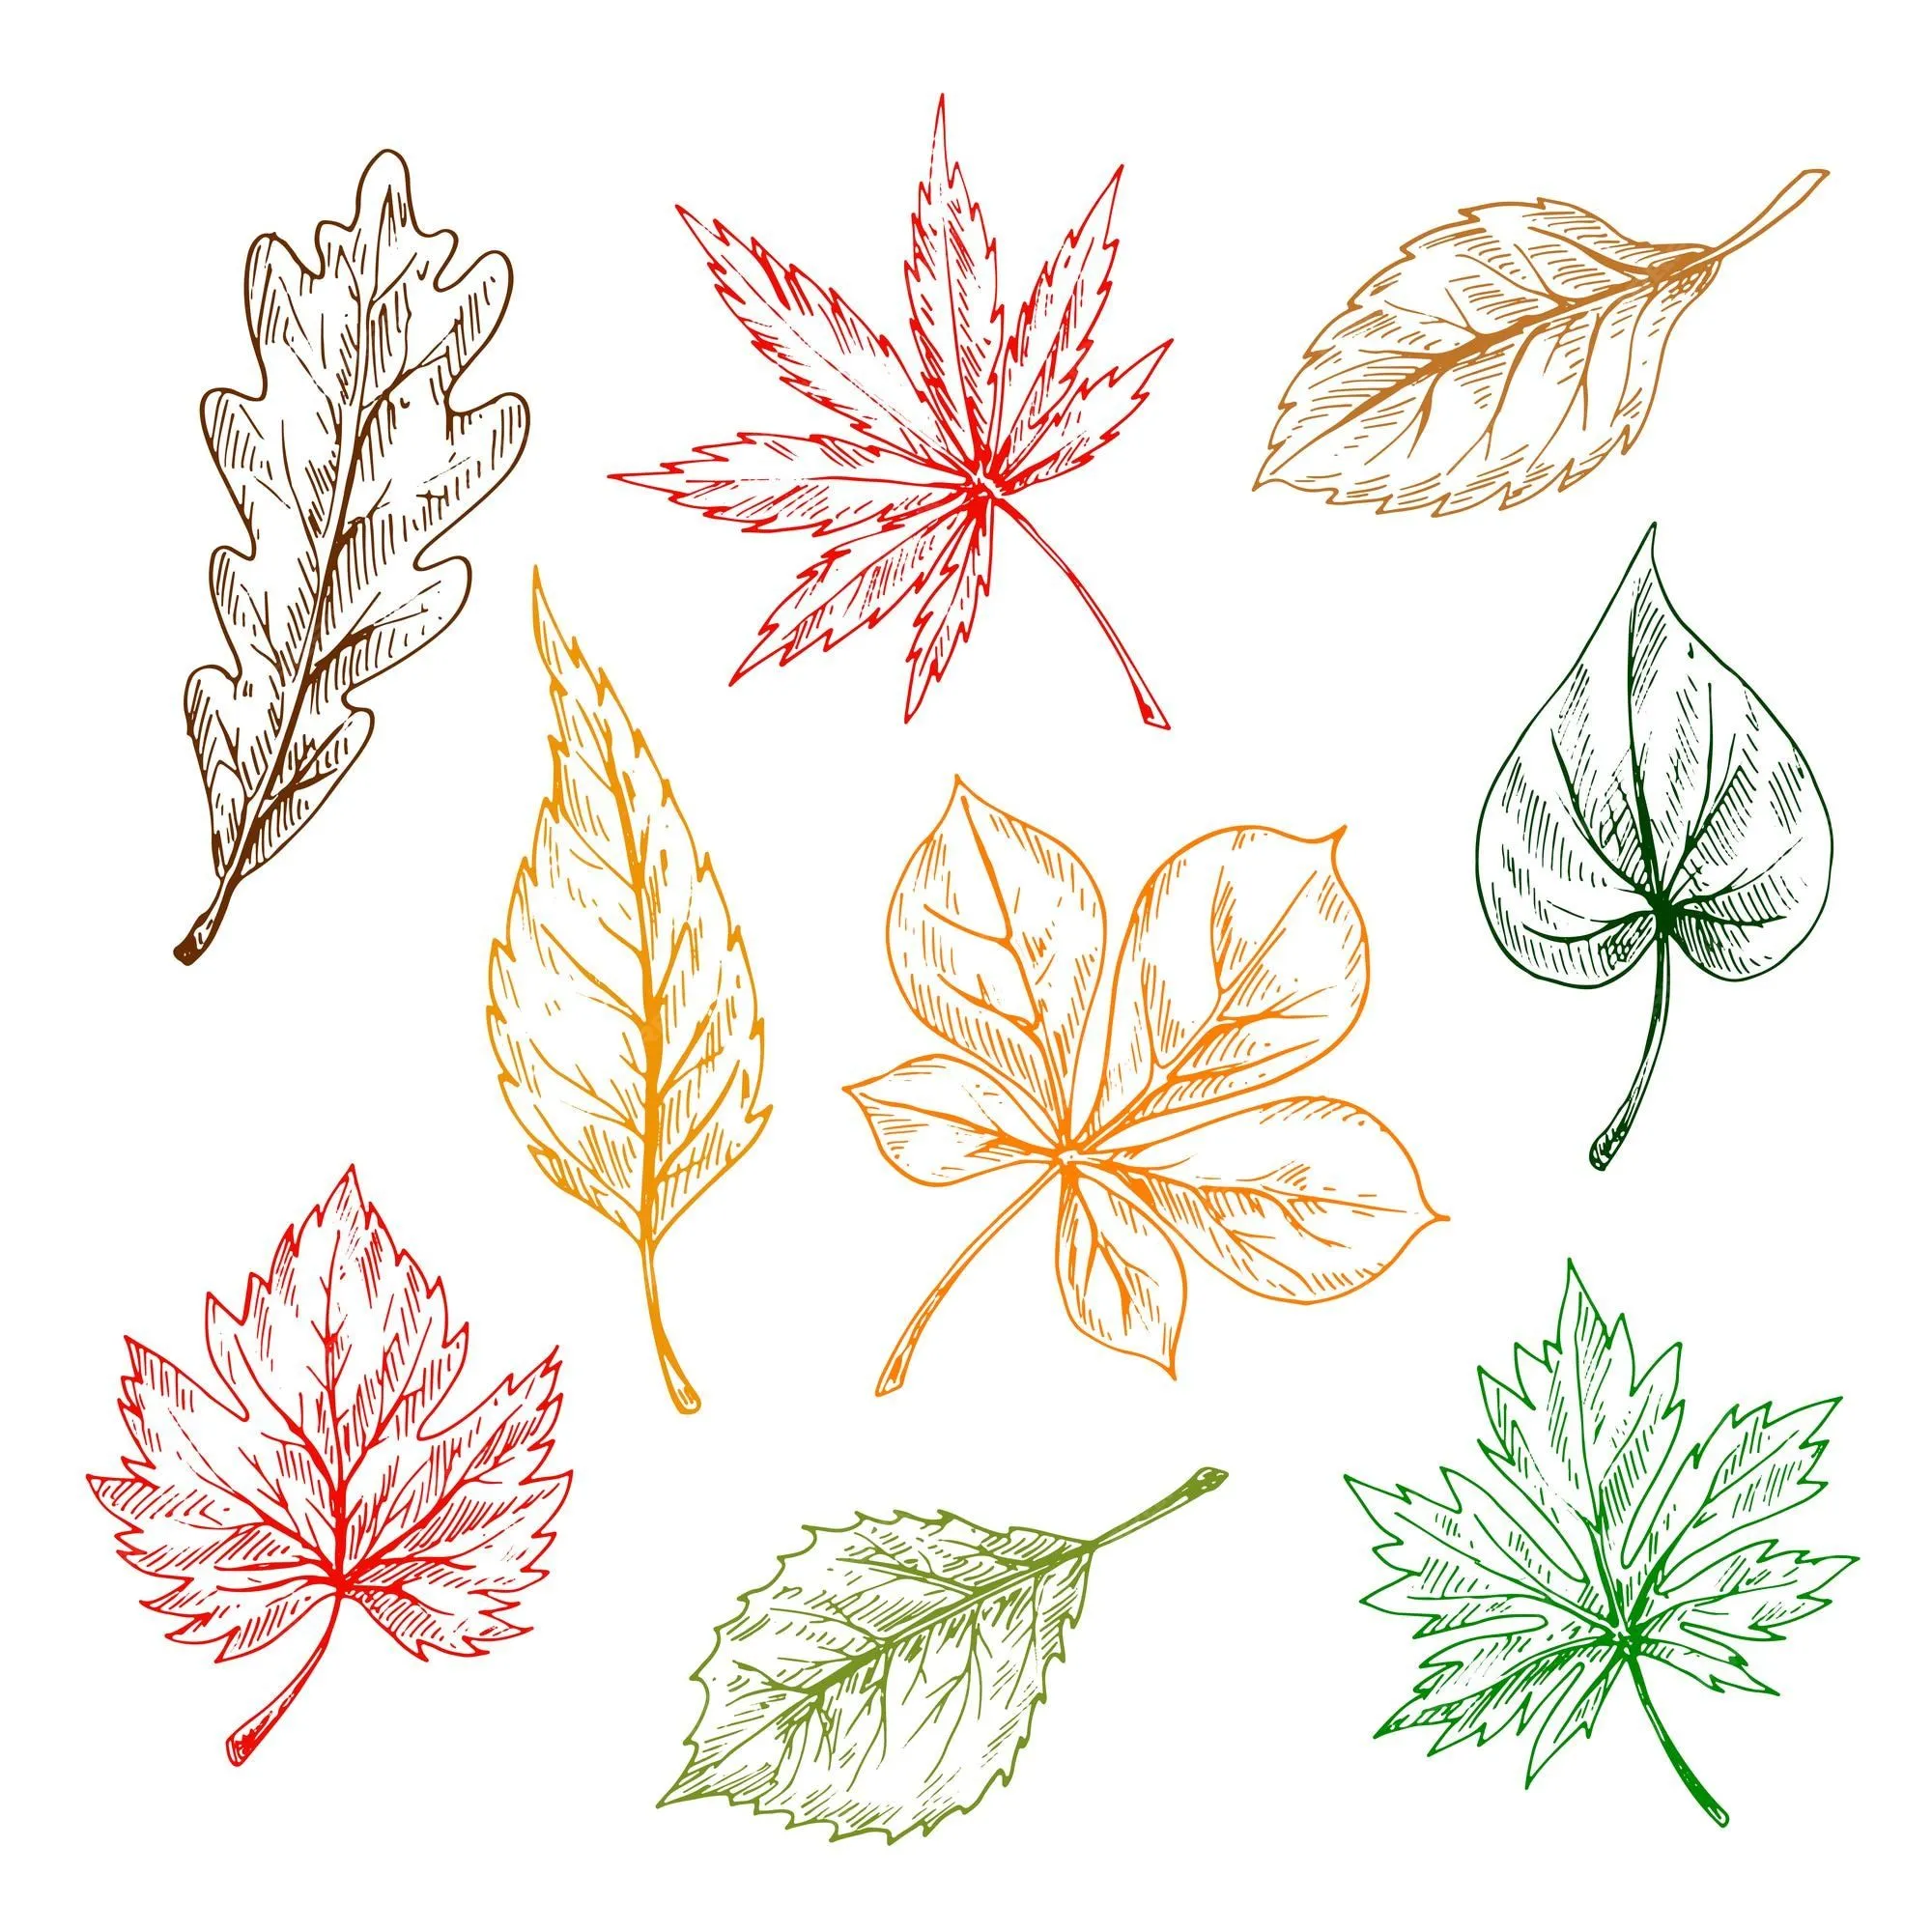 Conjunto de hojas de árboles y plantas. dibujo a lápiz dibujado a mano.  roble, arce, abedul, álamo temblón, castaño, hojas de olmo para imprimir o  diseñar en otoño | Vector Premium